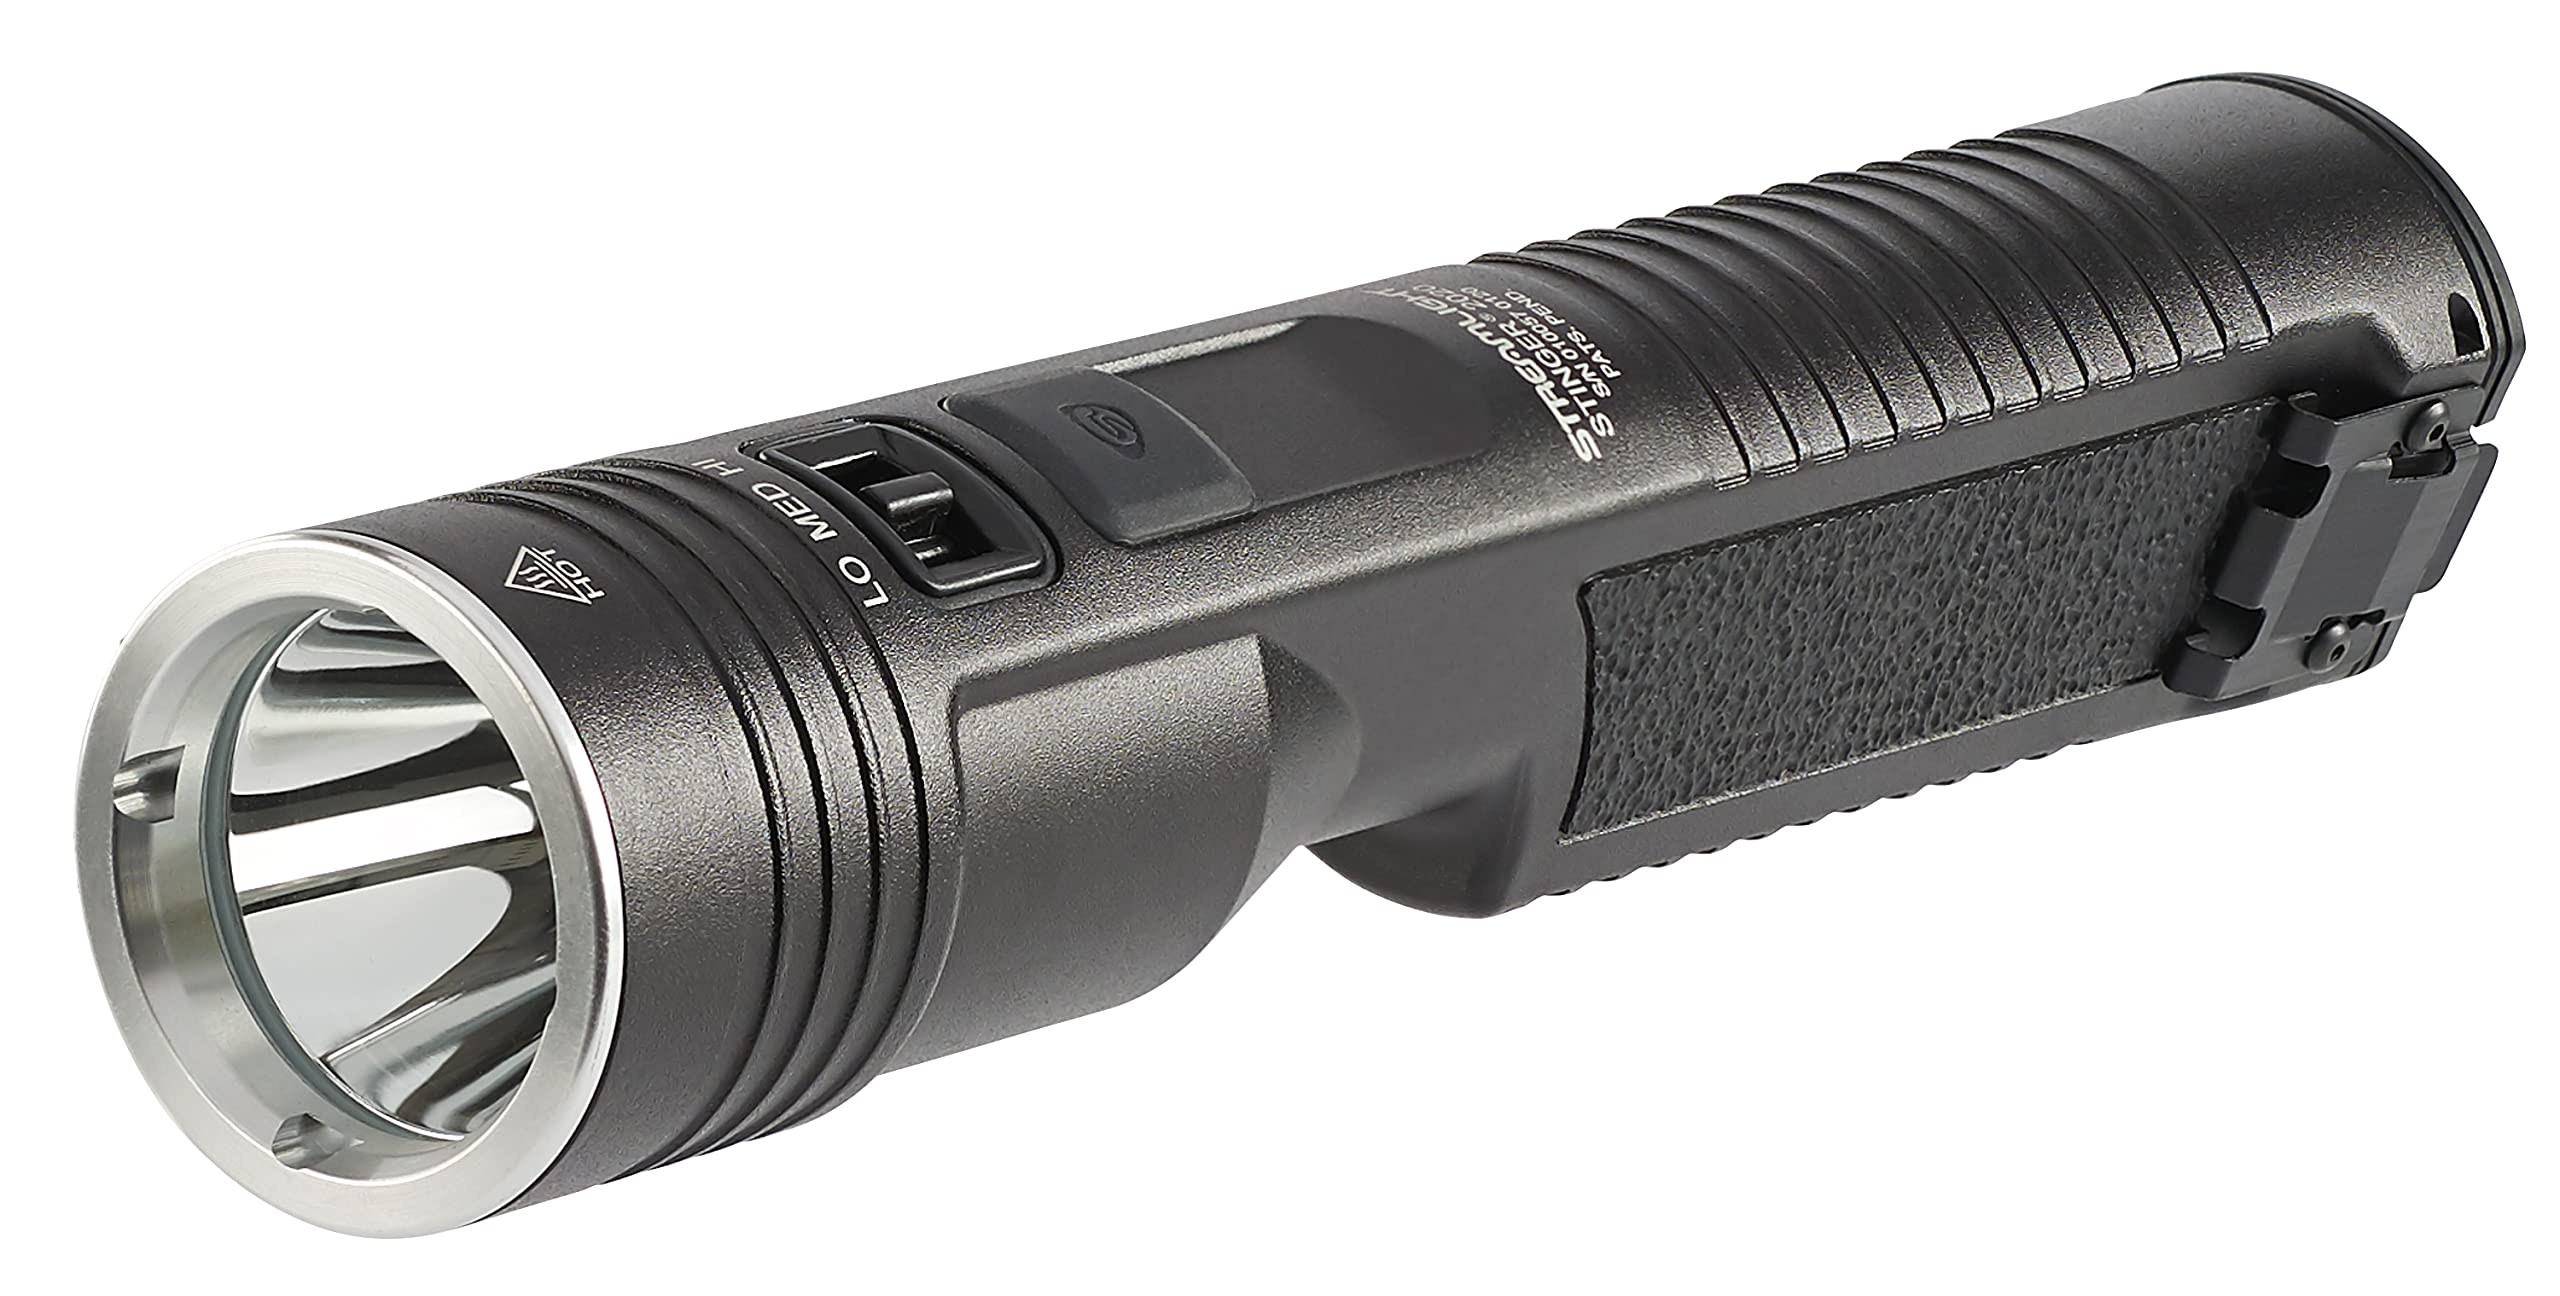 Streamlight 78100 Stinger 2020 2000-Lumen Wiederaufladbare Taschenlampe mit Y USB Kabel ohne Ladegerät, Schwarz